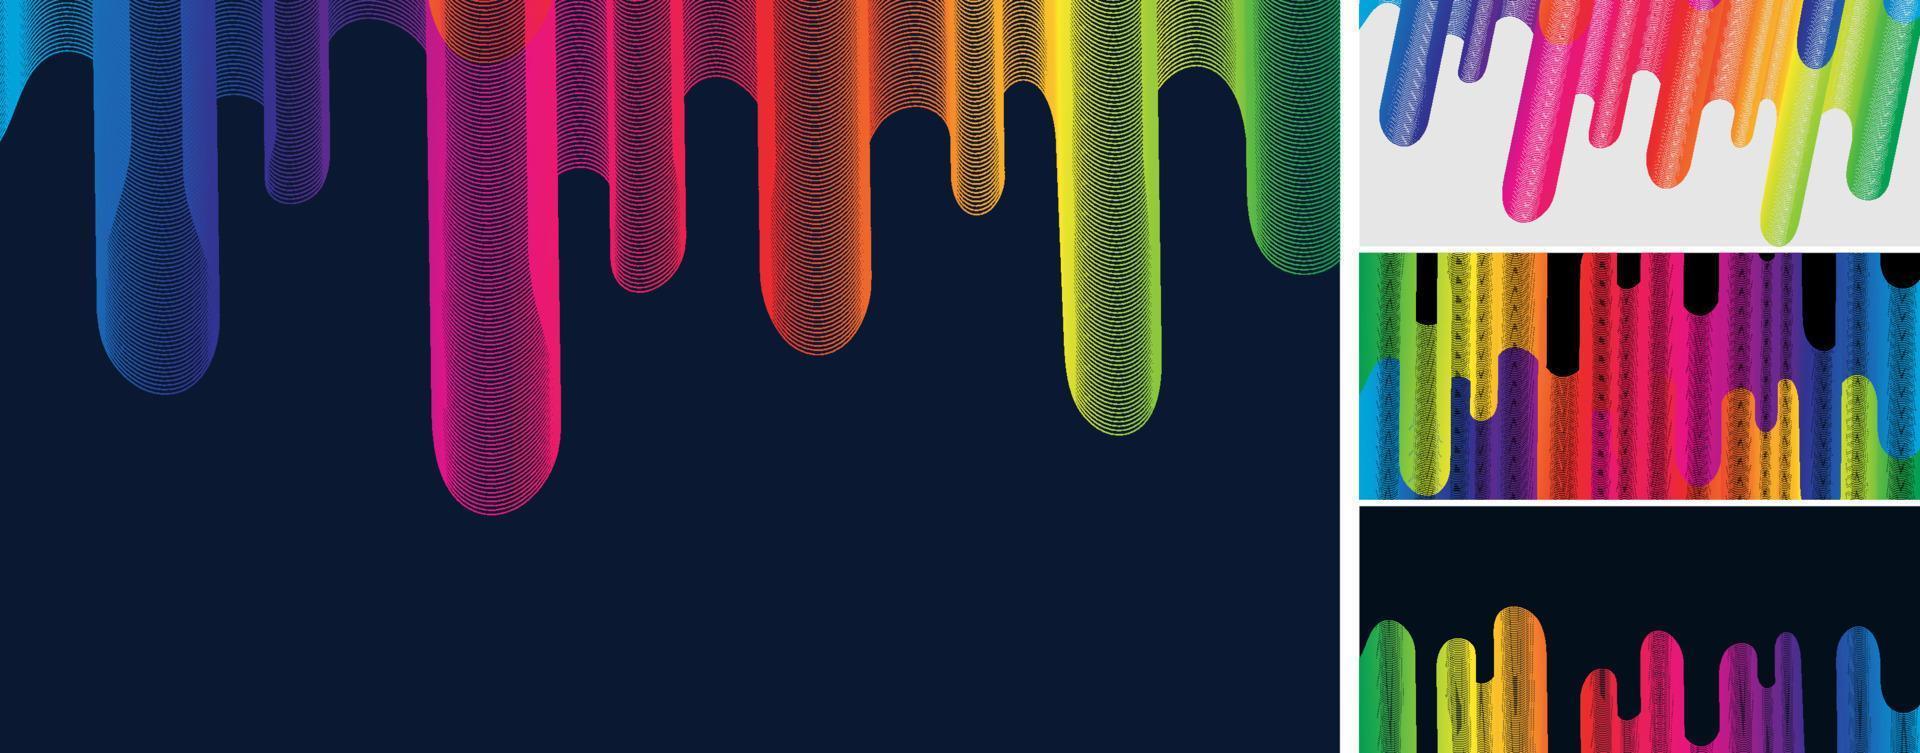 conjunto de linhas de onda coloridas abstratas arco-íris fluxo de gota fluida em fundo escuro vetor